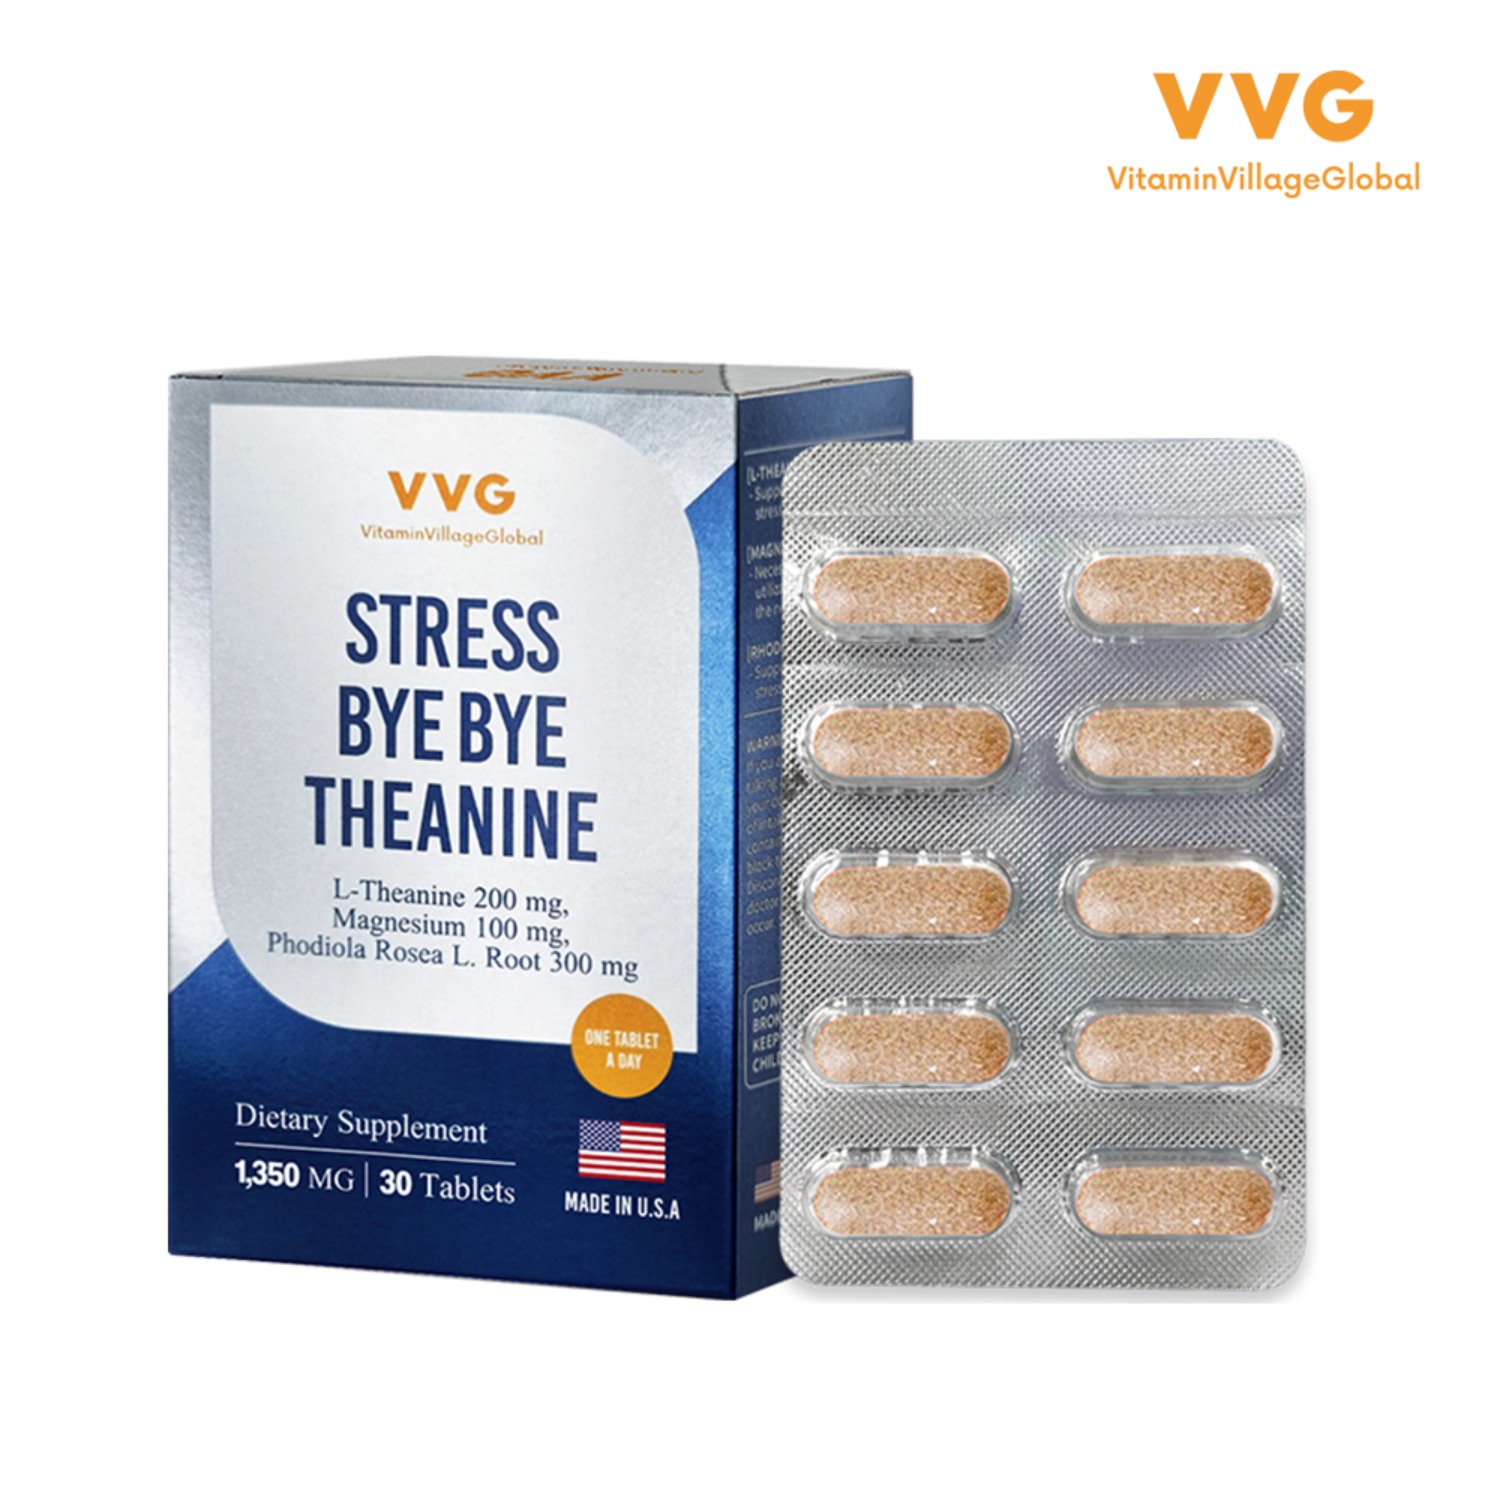 비타민마을 VVG 스트레스 바이바이 L-테아닌 1박스 1개월분